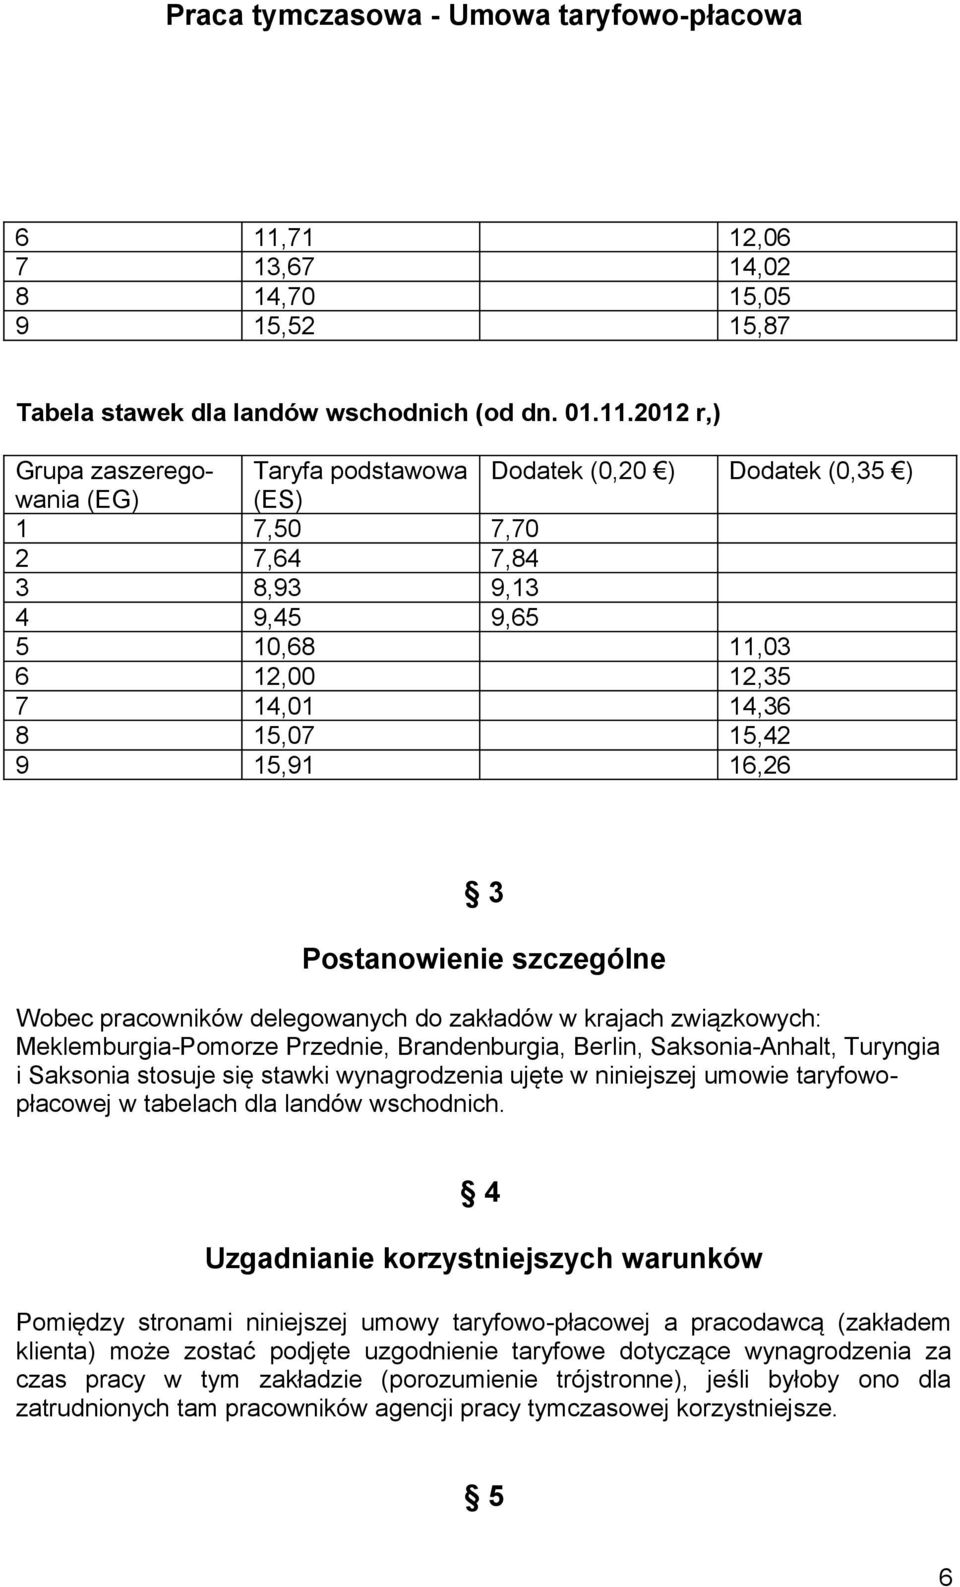 Turyngia i Saksonia stosuje się stawki wynagrodzenia ujęte w niniejszej umowie taryfowopłacowej w tabelach dla landów wschodnich.